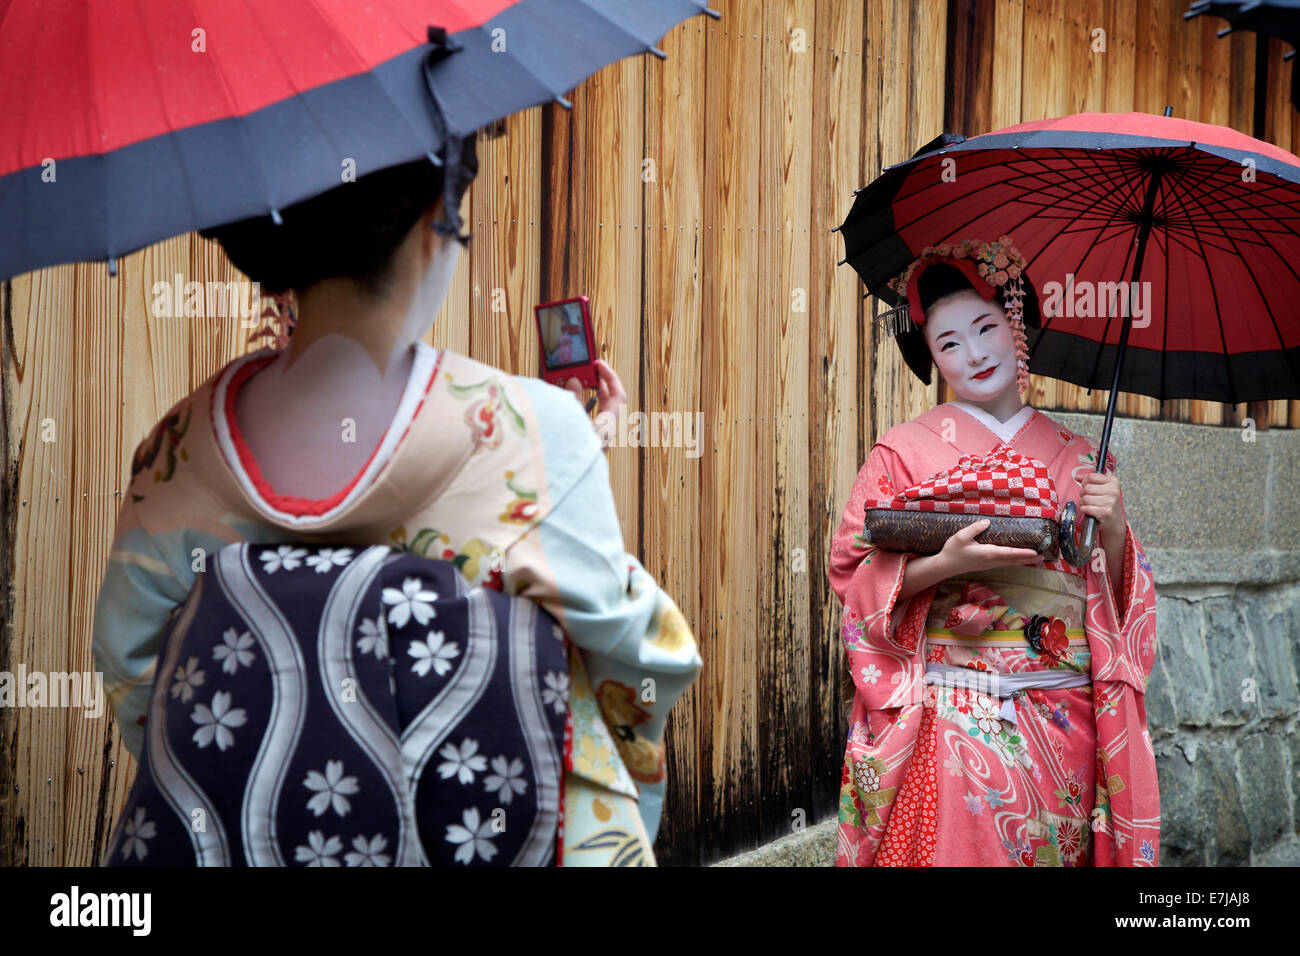 Japanische Frauen, weibliche Schönheit, Geishas, posiert für ein Foto, Gion Bereich, Kyoto, Japan, Asien. Traditionelle Geisha Make-up und Kleidung Stockfoto